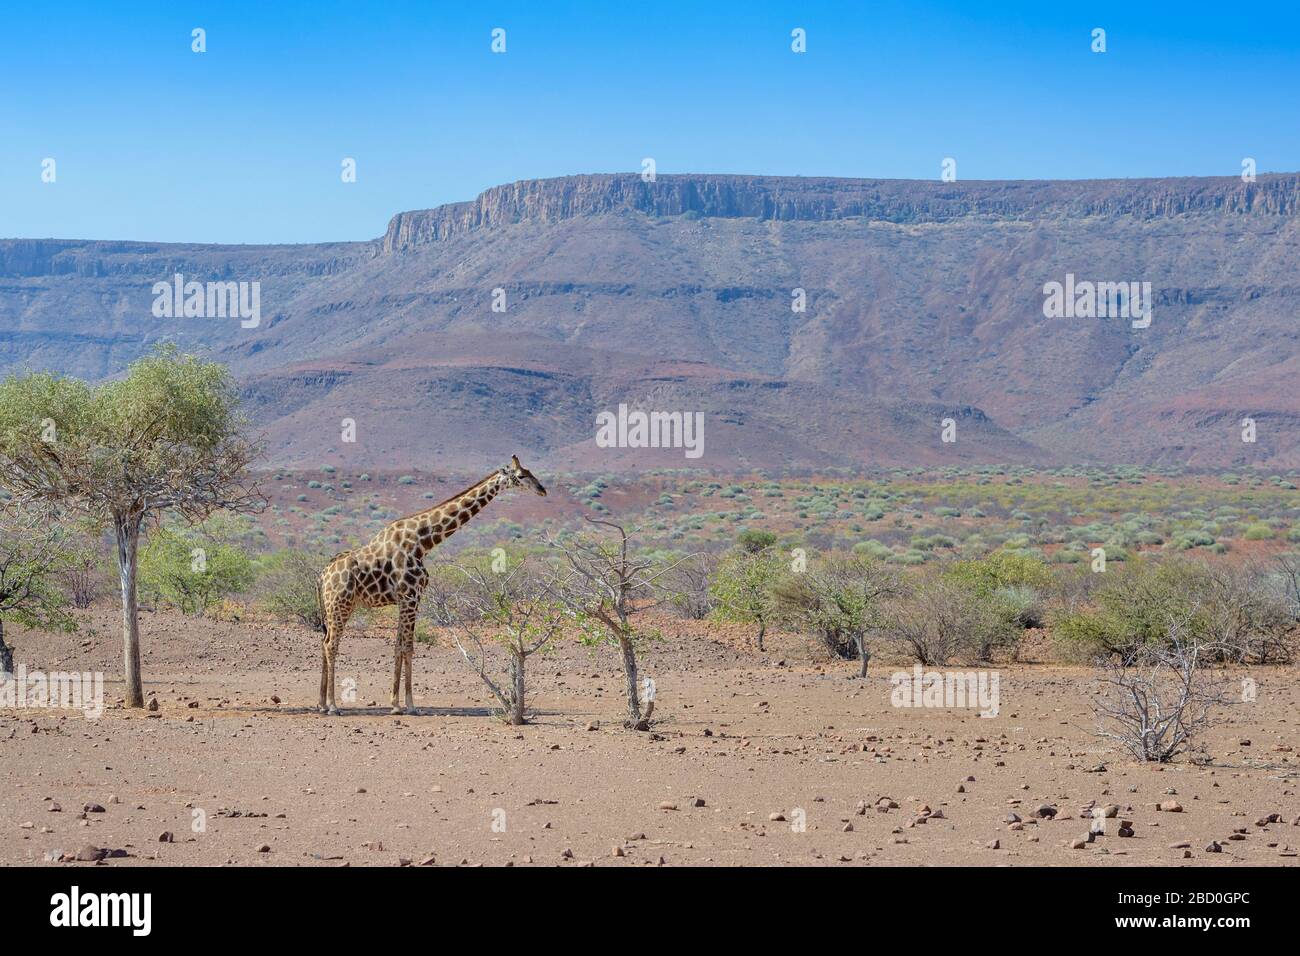 Girafe adaptée au désert (Giraffa camelopardalis) dans le paysage désertique se nourrissant d'acaciatree, Damaraland, Namibie Banque D'Images